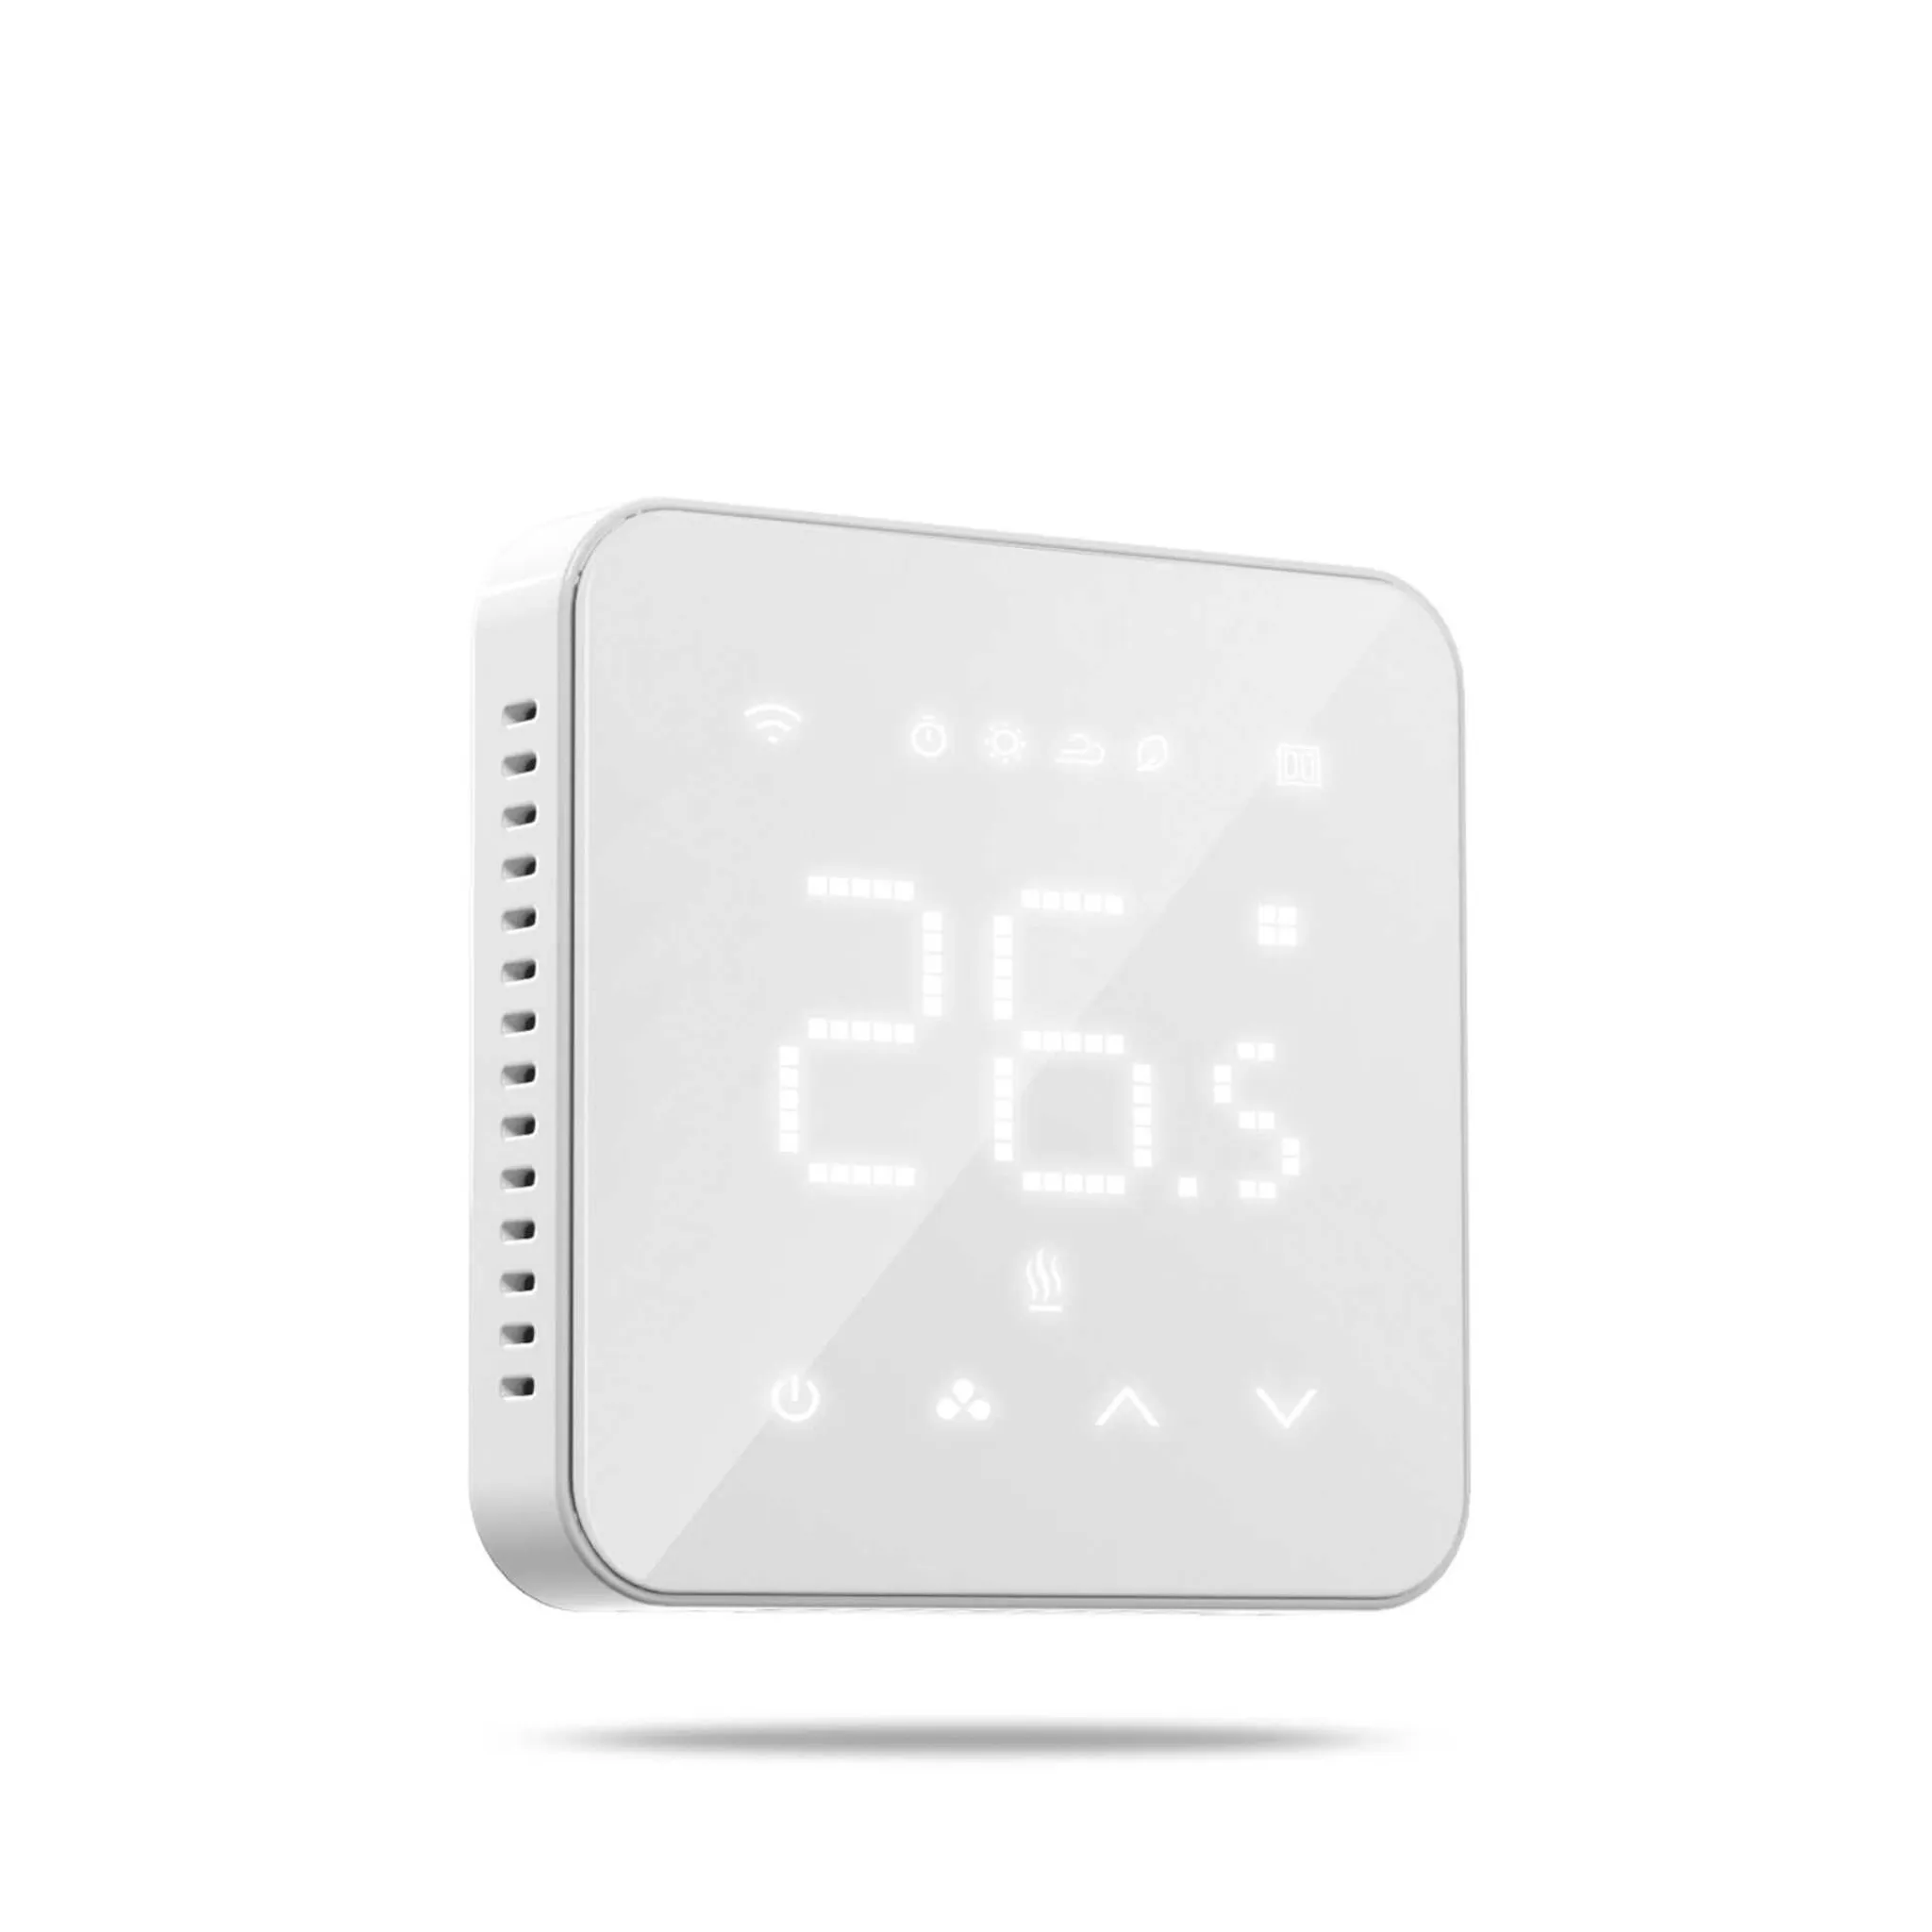 Thermostat Smart Wi-Fi Thermostat Meross MTS200HK(EU), HomeKit  (6973696562609)